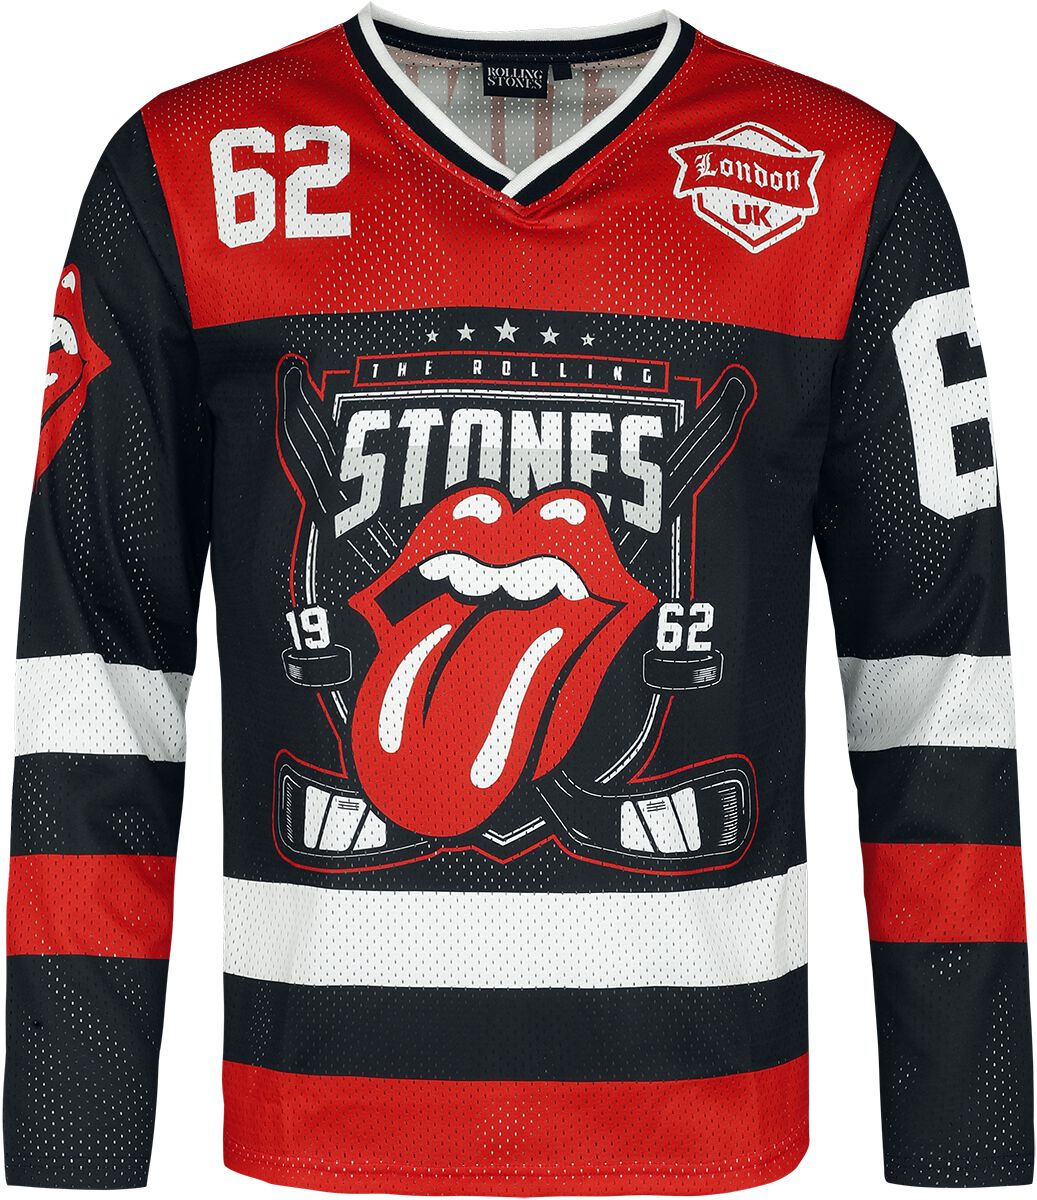 The Rolling Stones Trikot - It`s Only Rock N Roll - L bis 3XL - für Männer - Größe 3XL - multicolor  - EMP exklusives Merchandise!